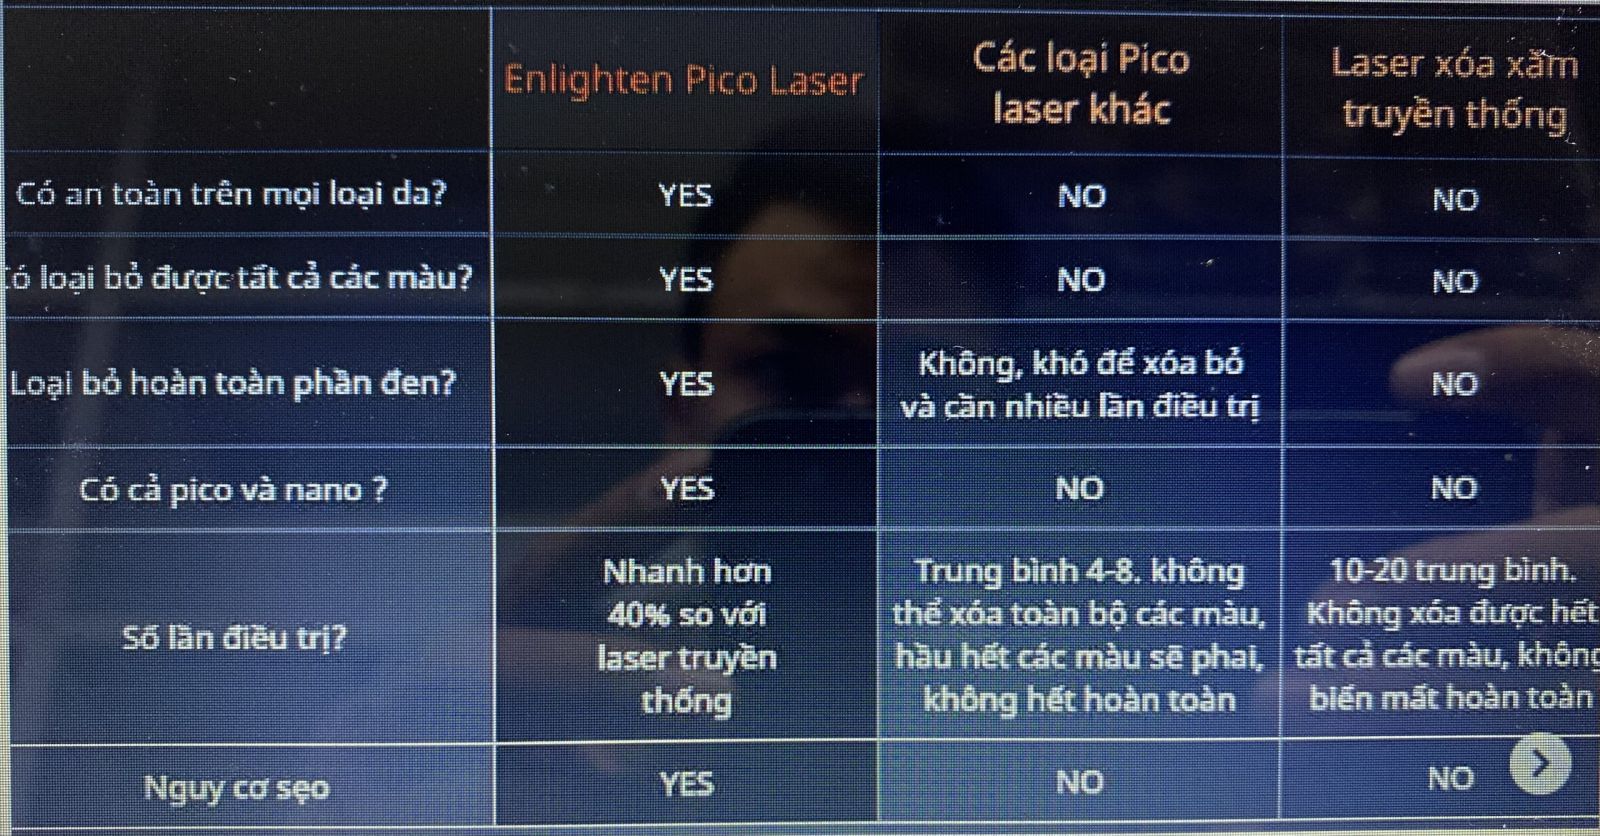 Laser Pico Enlighten khác biệt và vượt trội hơn các thiết bị laser pico khác ntn?